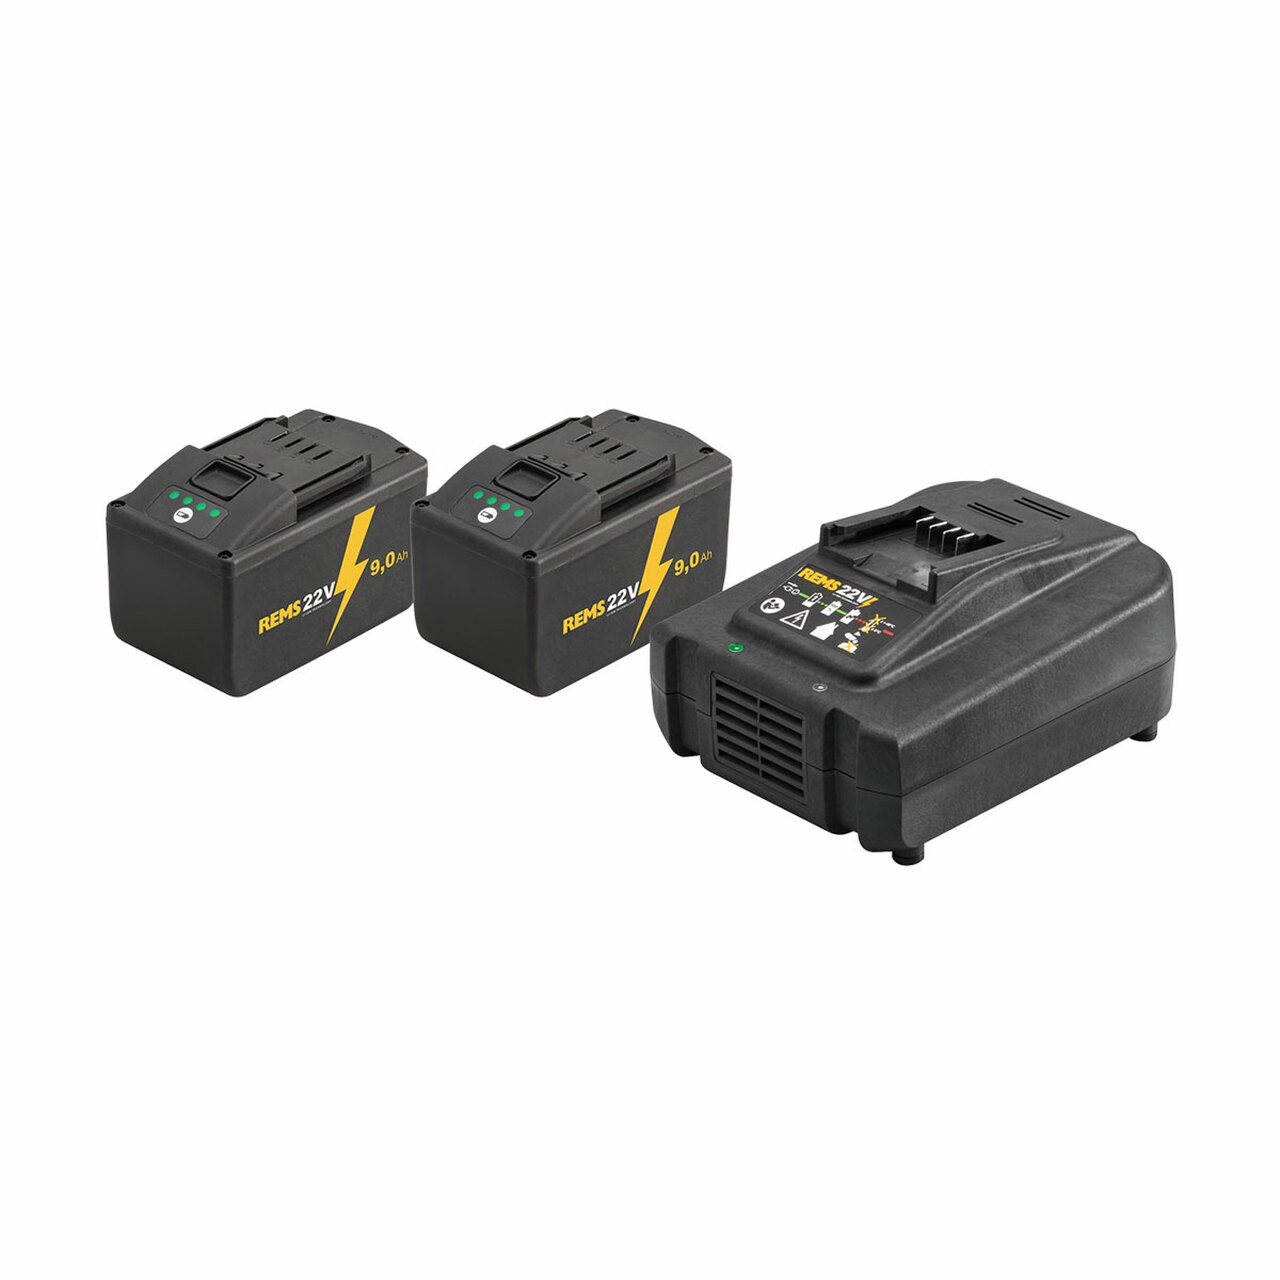 REMS Power-Pack 22V, 9,0 Ah / 230V, 290 W Akumulátory a nabíječka, 571594 R220